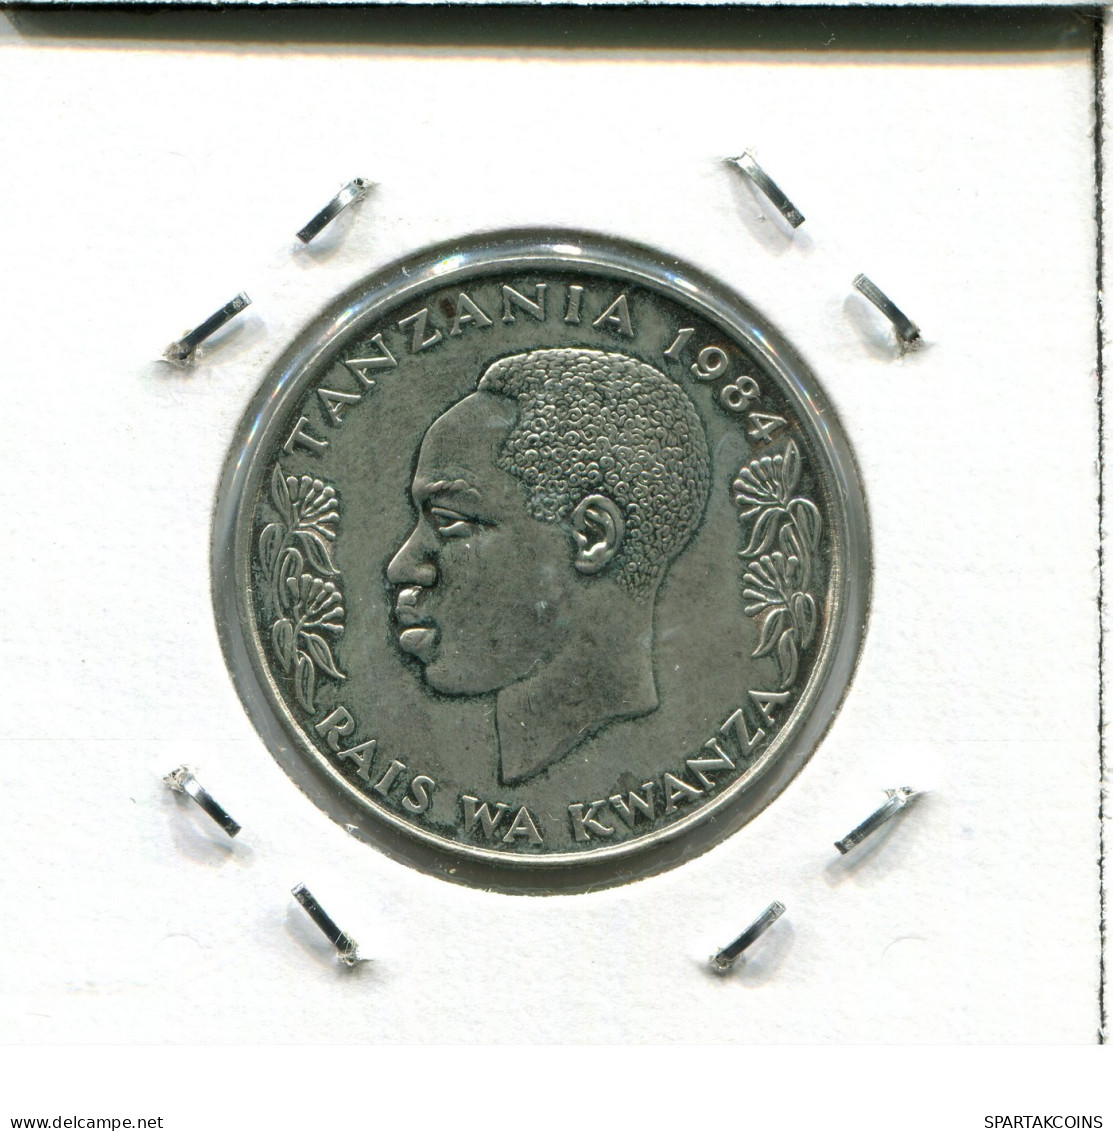 1 SHILLINGI 1984 TANZANIA Moneda #AX250.E.A - Tanzania